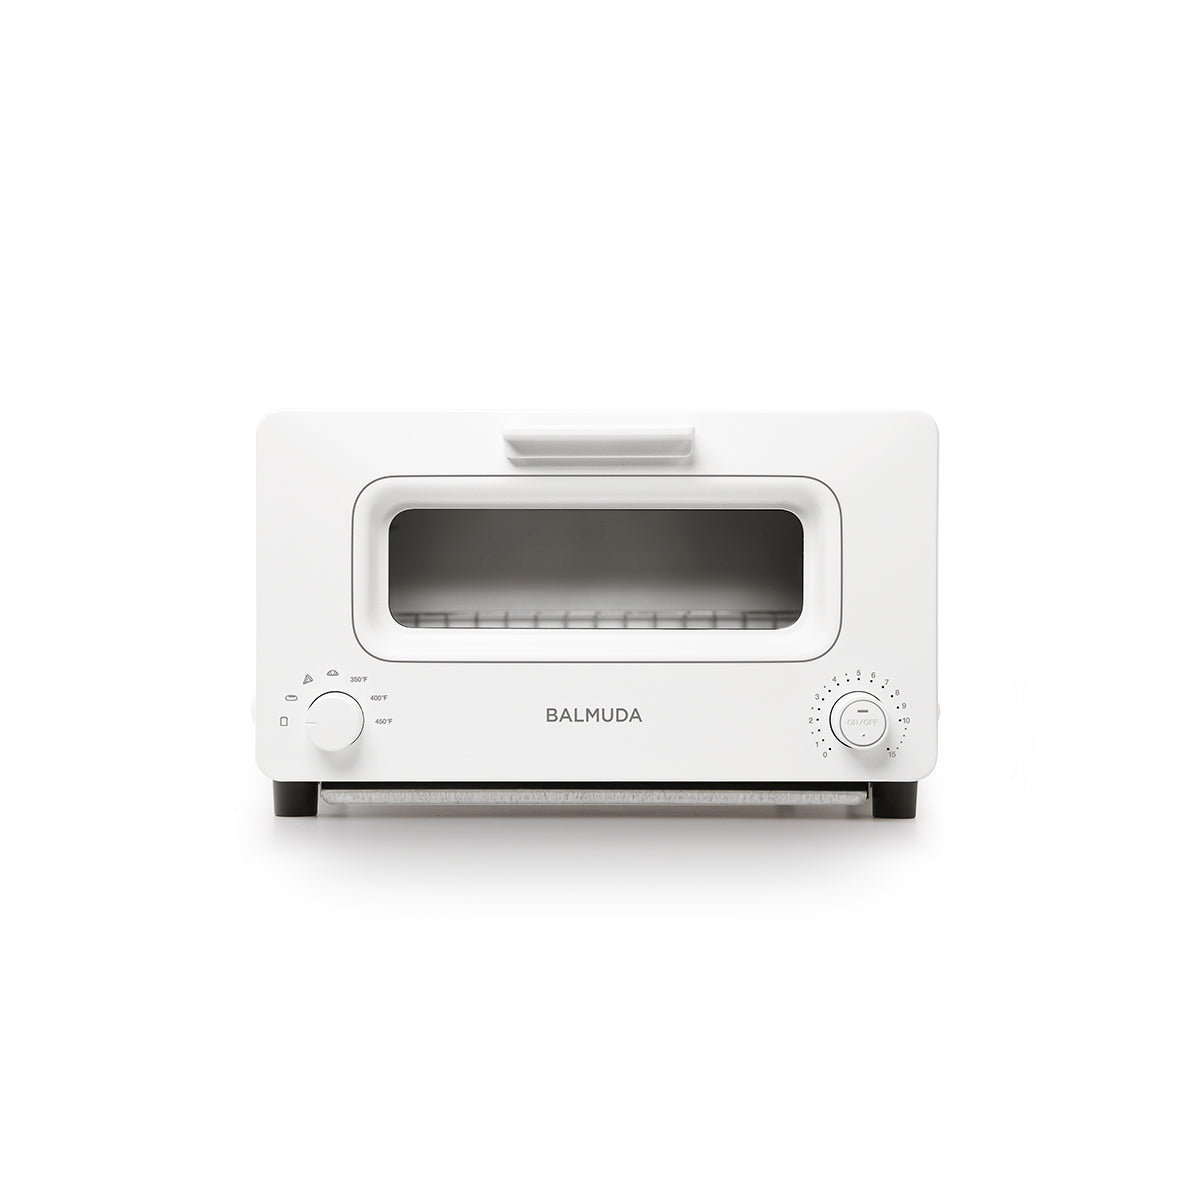 BALMUDA The Toaster - White - – santoku nyc